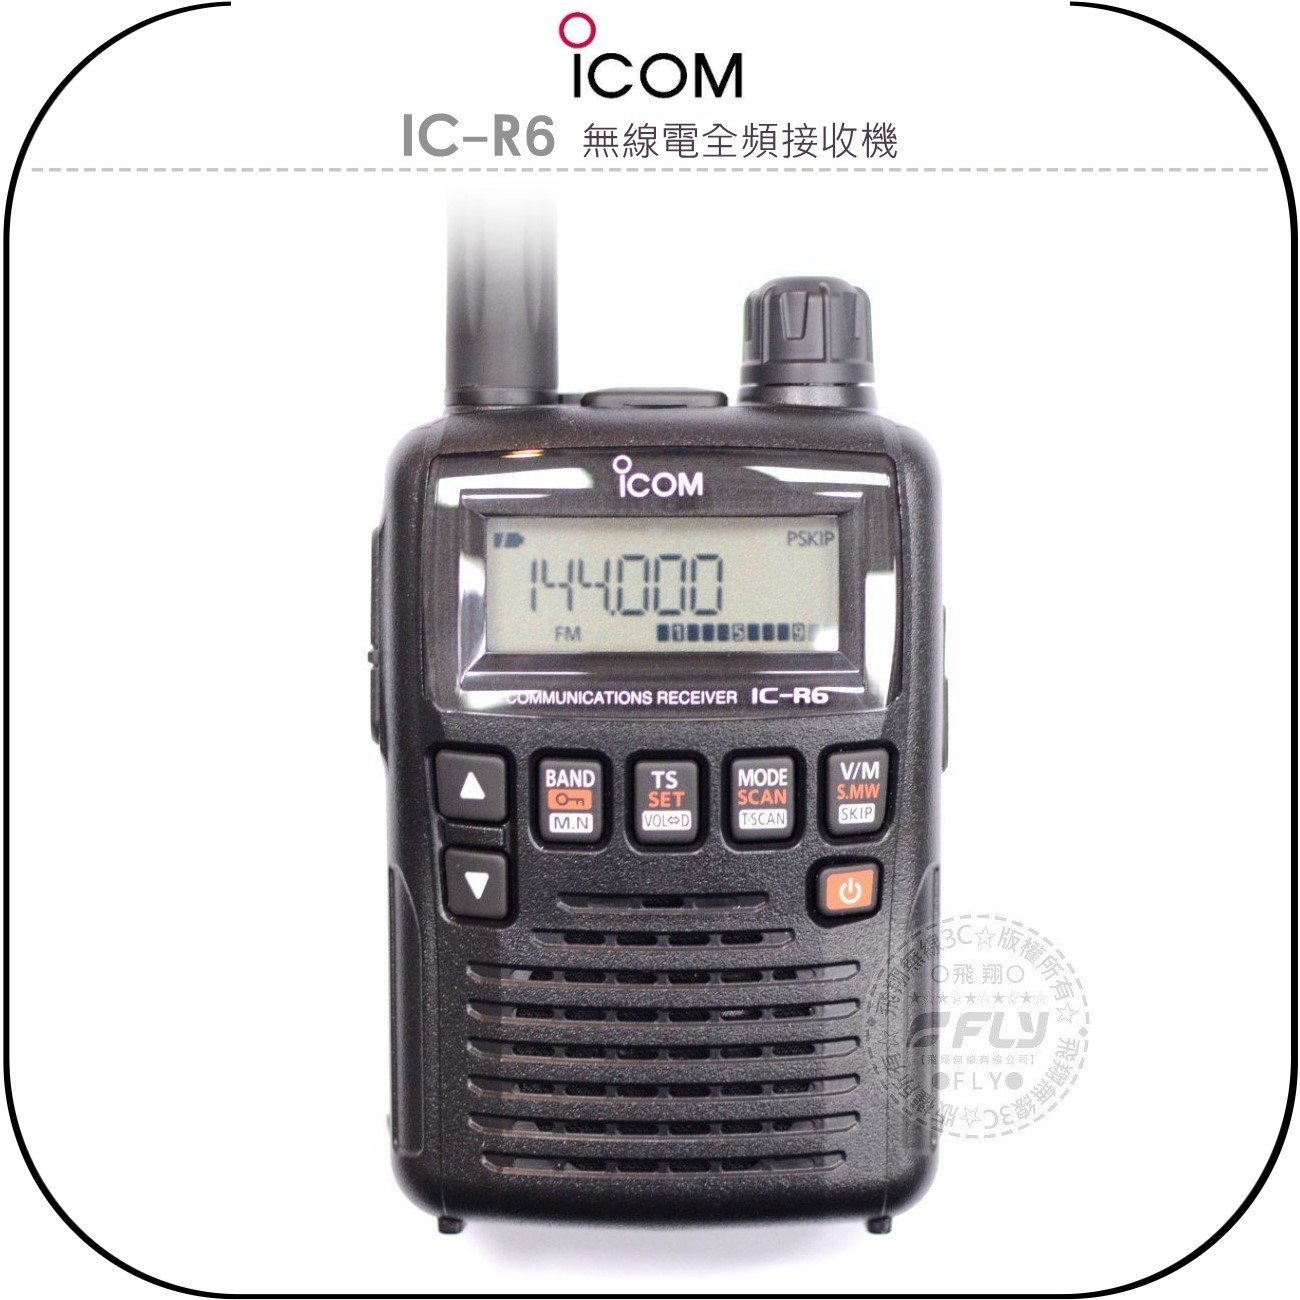 《飛翔無線3C》ICOM IC-R6 無線電全頻接收機◉公司貨◉日本原裝◉手持式◉0.1-1310Mhz | 飛翔無線3C直營店 |  樂天市場Rakuten